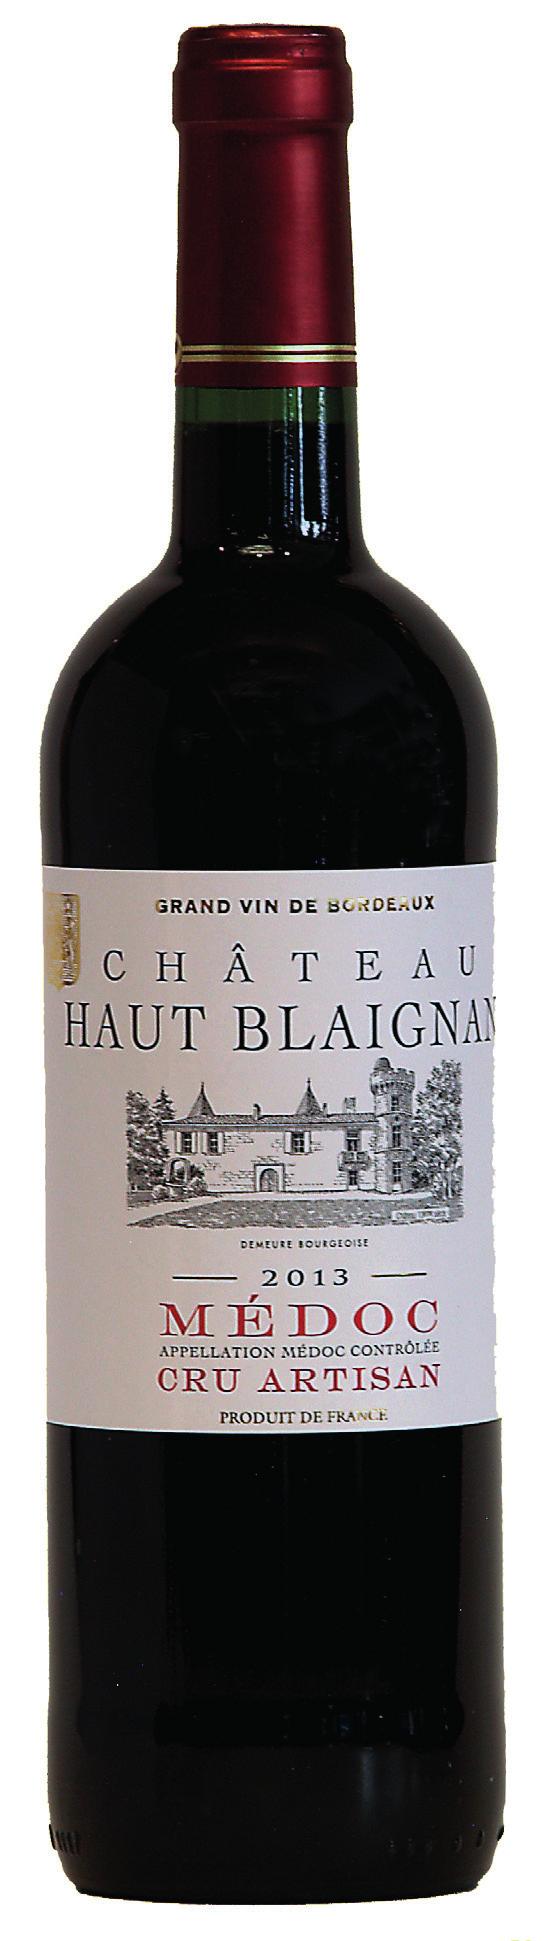 Château Haut Blaignan Médoc Cru Artisan 2013 50% cabernet-sauvignon, 47% merlot, 3% cabernetfranc. Di un colore granato intenso con riflessi rubino.